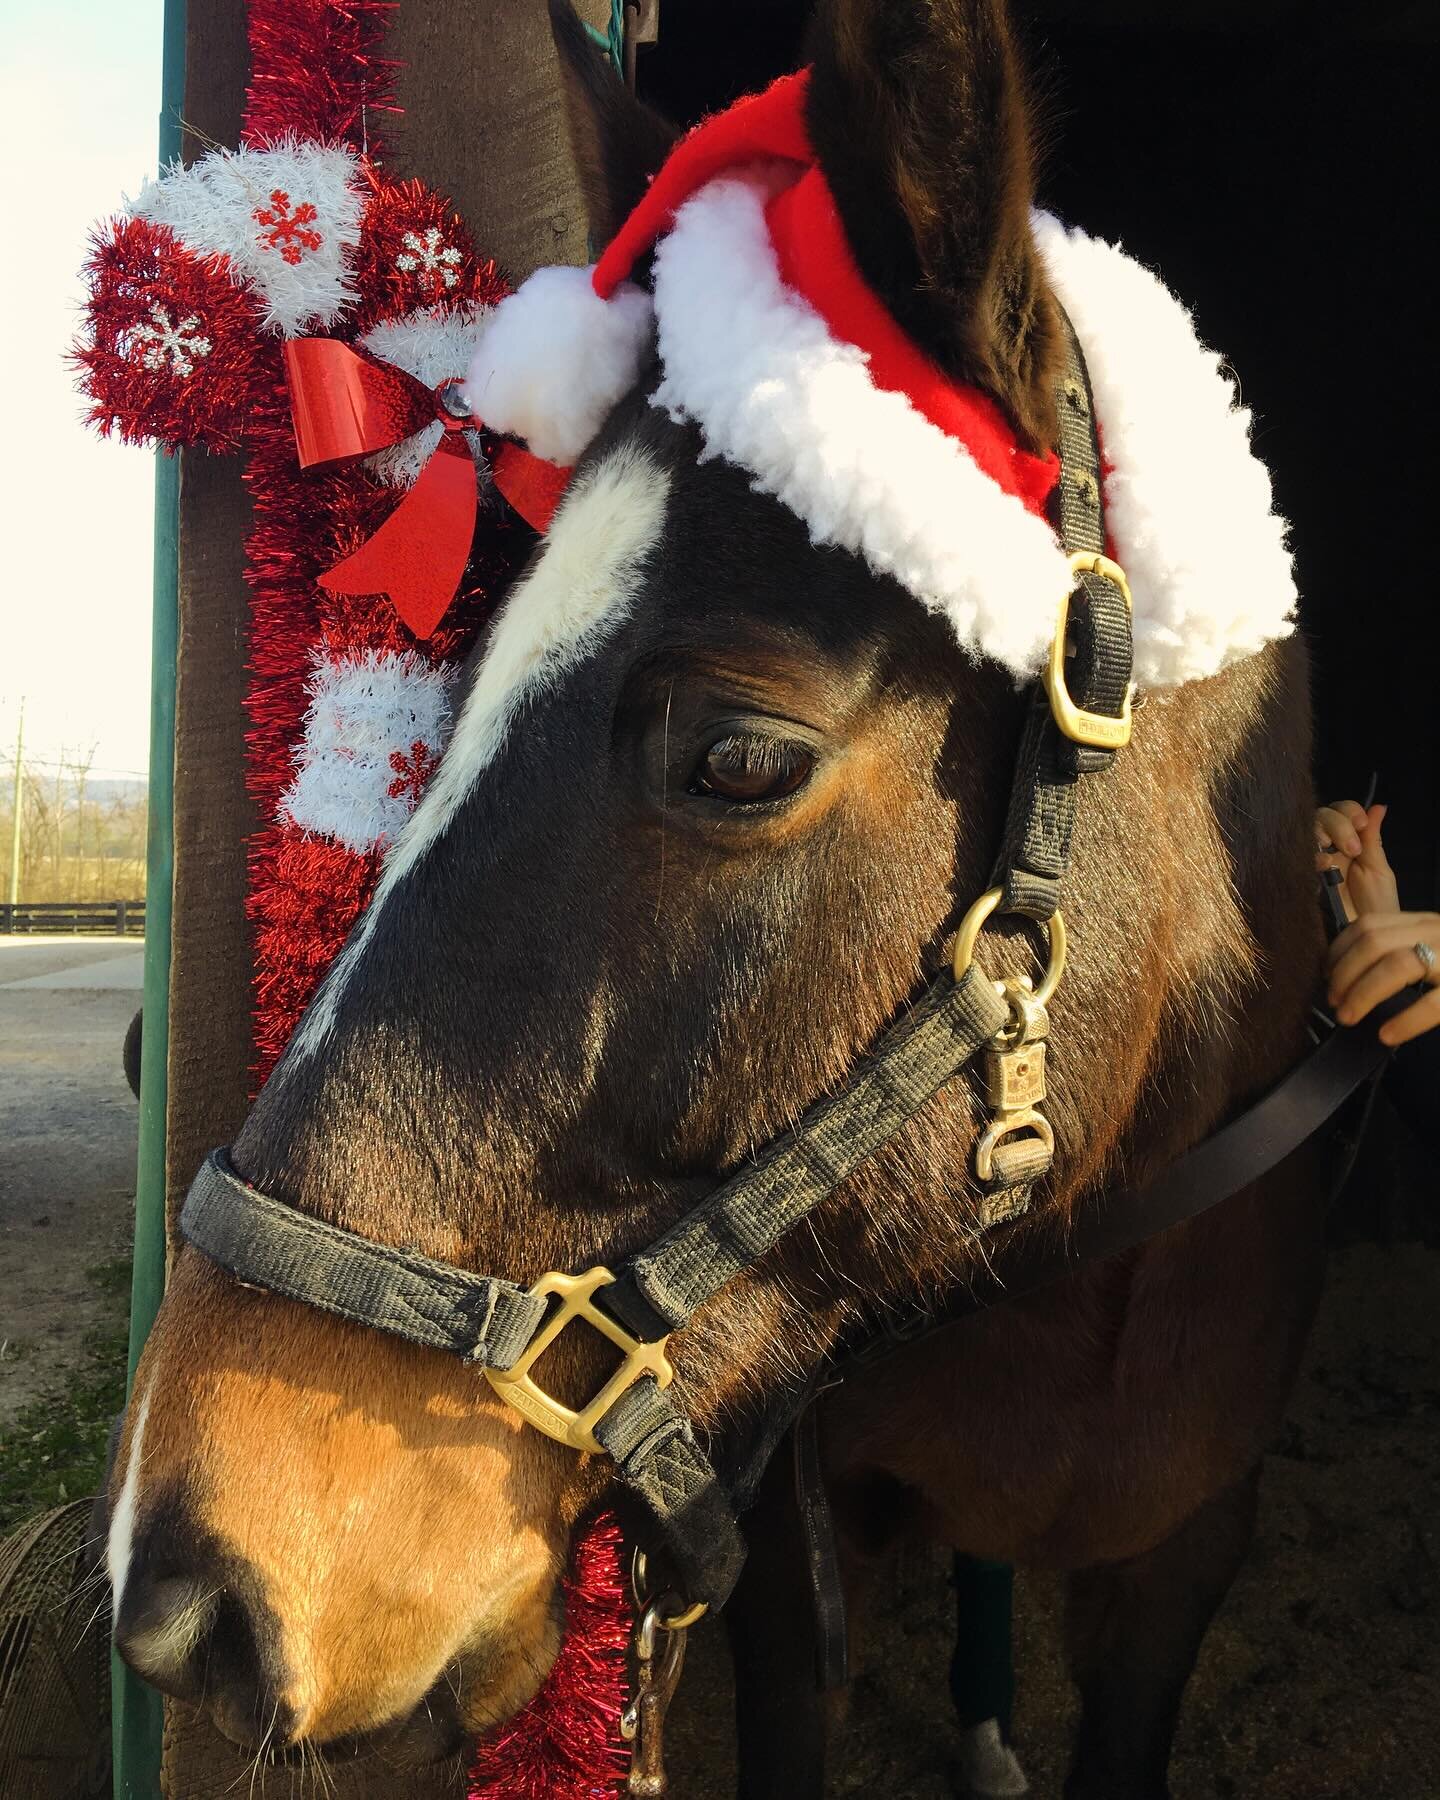 Christmas time at the polo barn! 🎄❤️🐴 #polo #polopony #horselove #barnlife #christmashorse #christmasmood